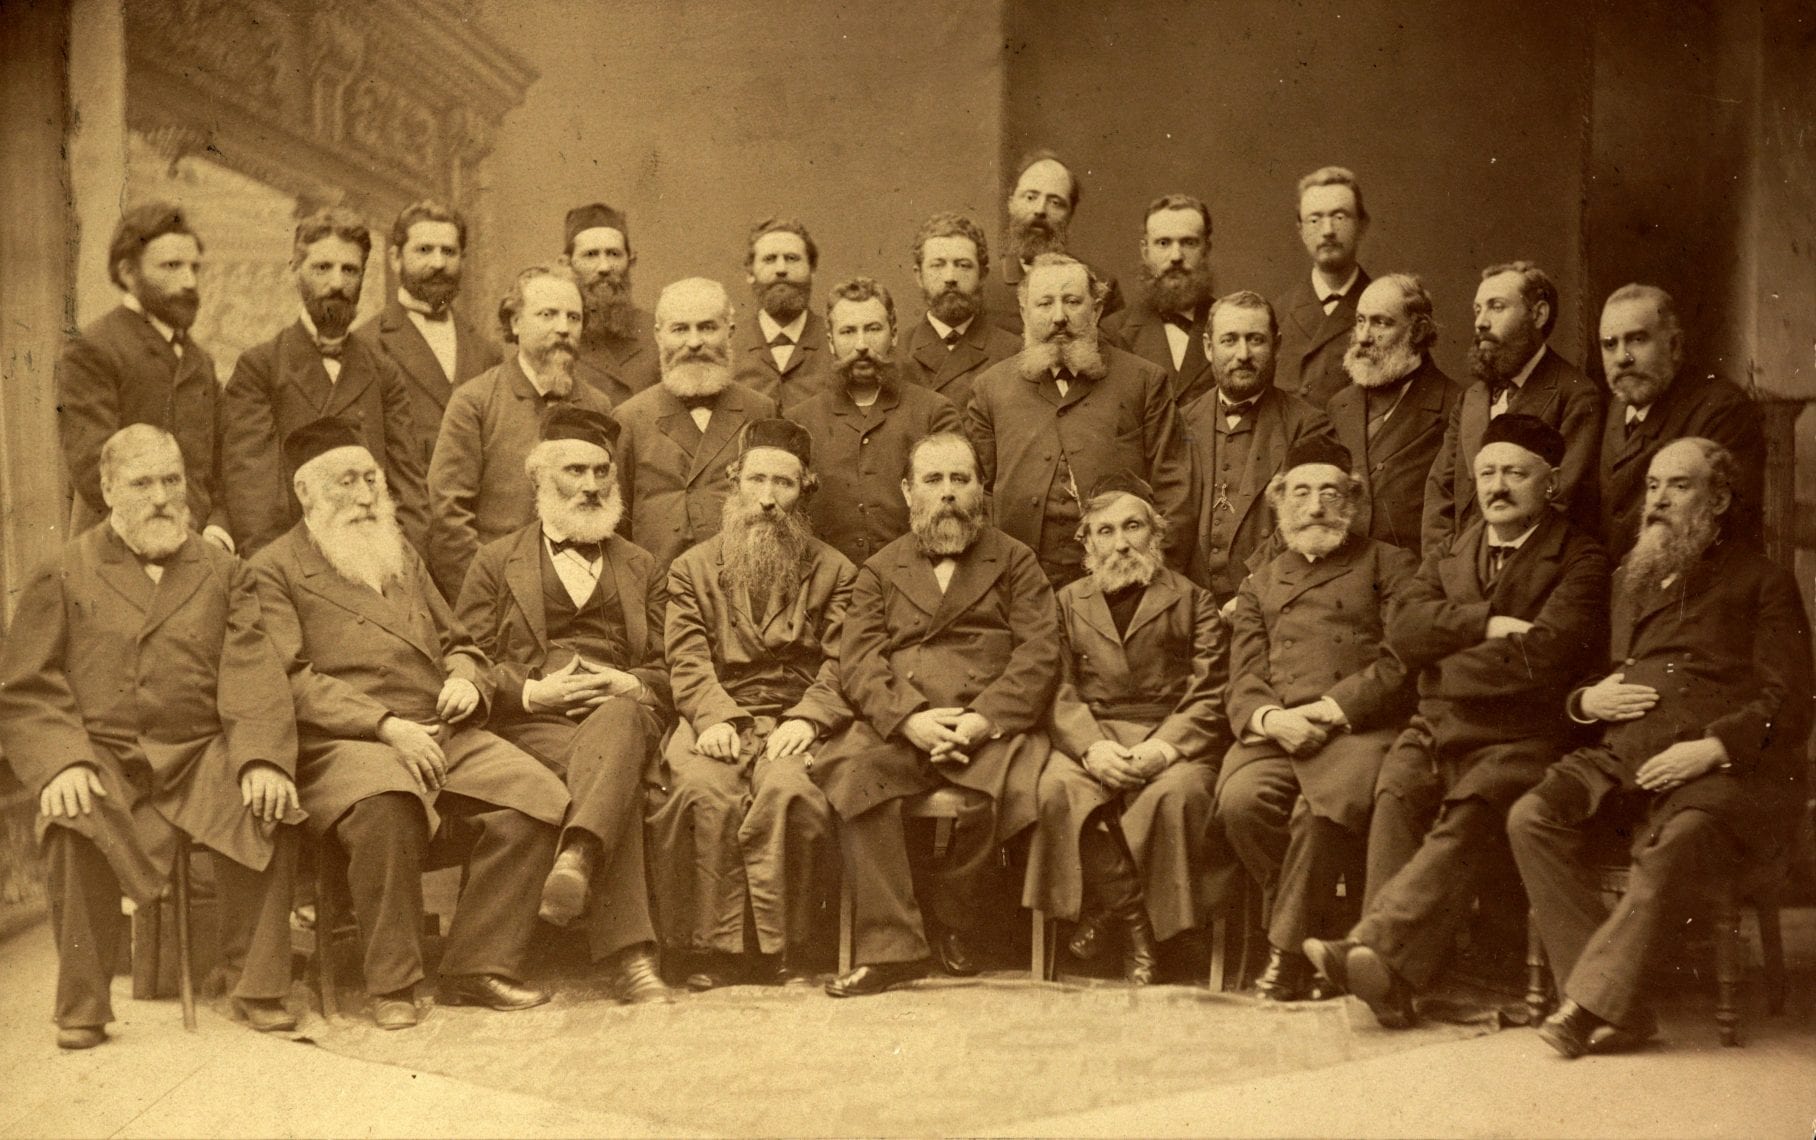 משתתפי ועידת קאטוביץ', הוועידה הראשונה של חובבי ציון, נובמבר 1884. צדרבוים יושב שלישי מימין (צילום: פ. קראוזה, אוסף הספריה הלאומית, ויקימדיה)